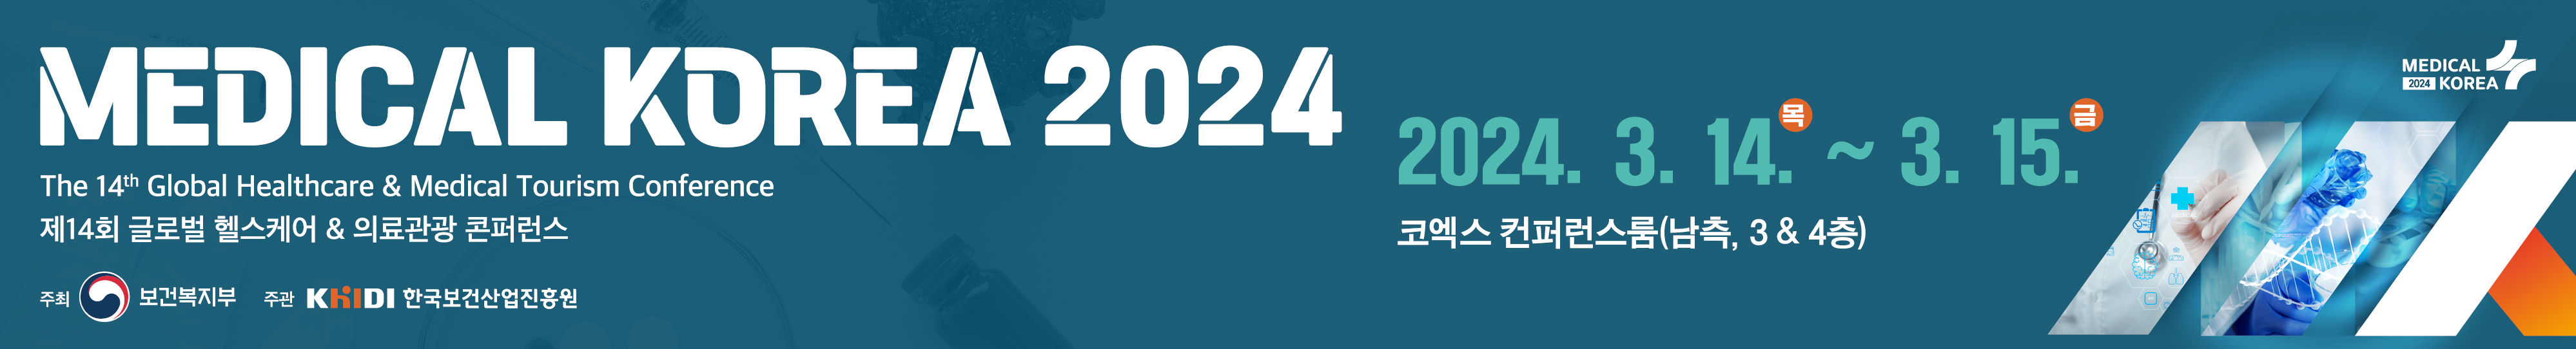 MEDICAL KOREA 2024